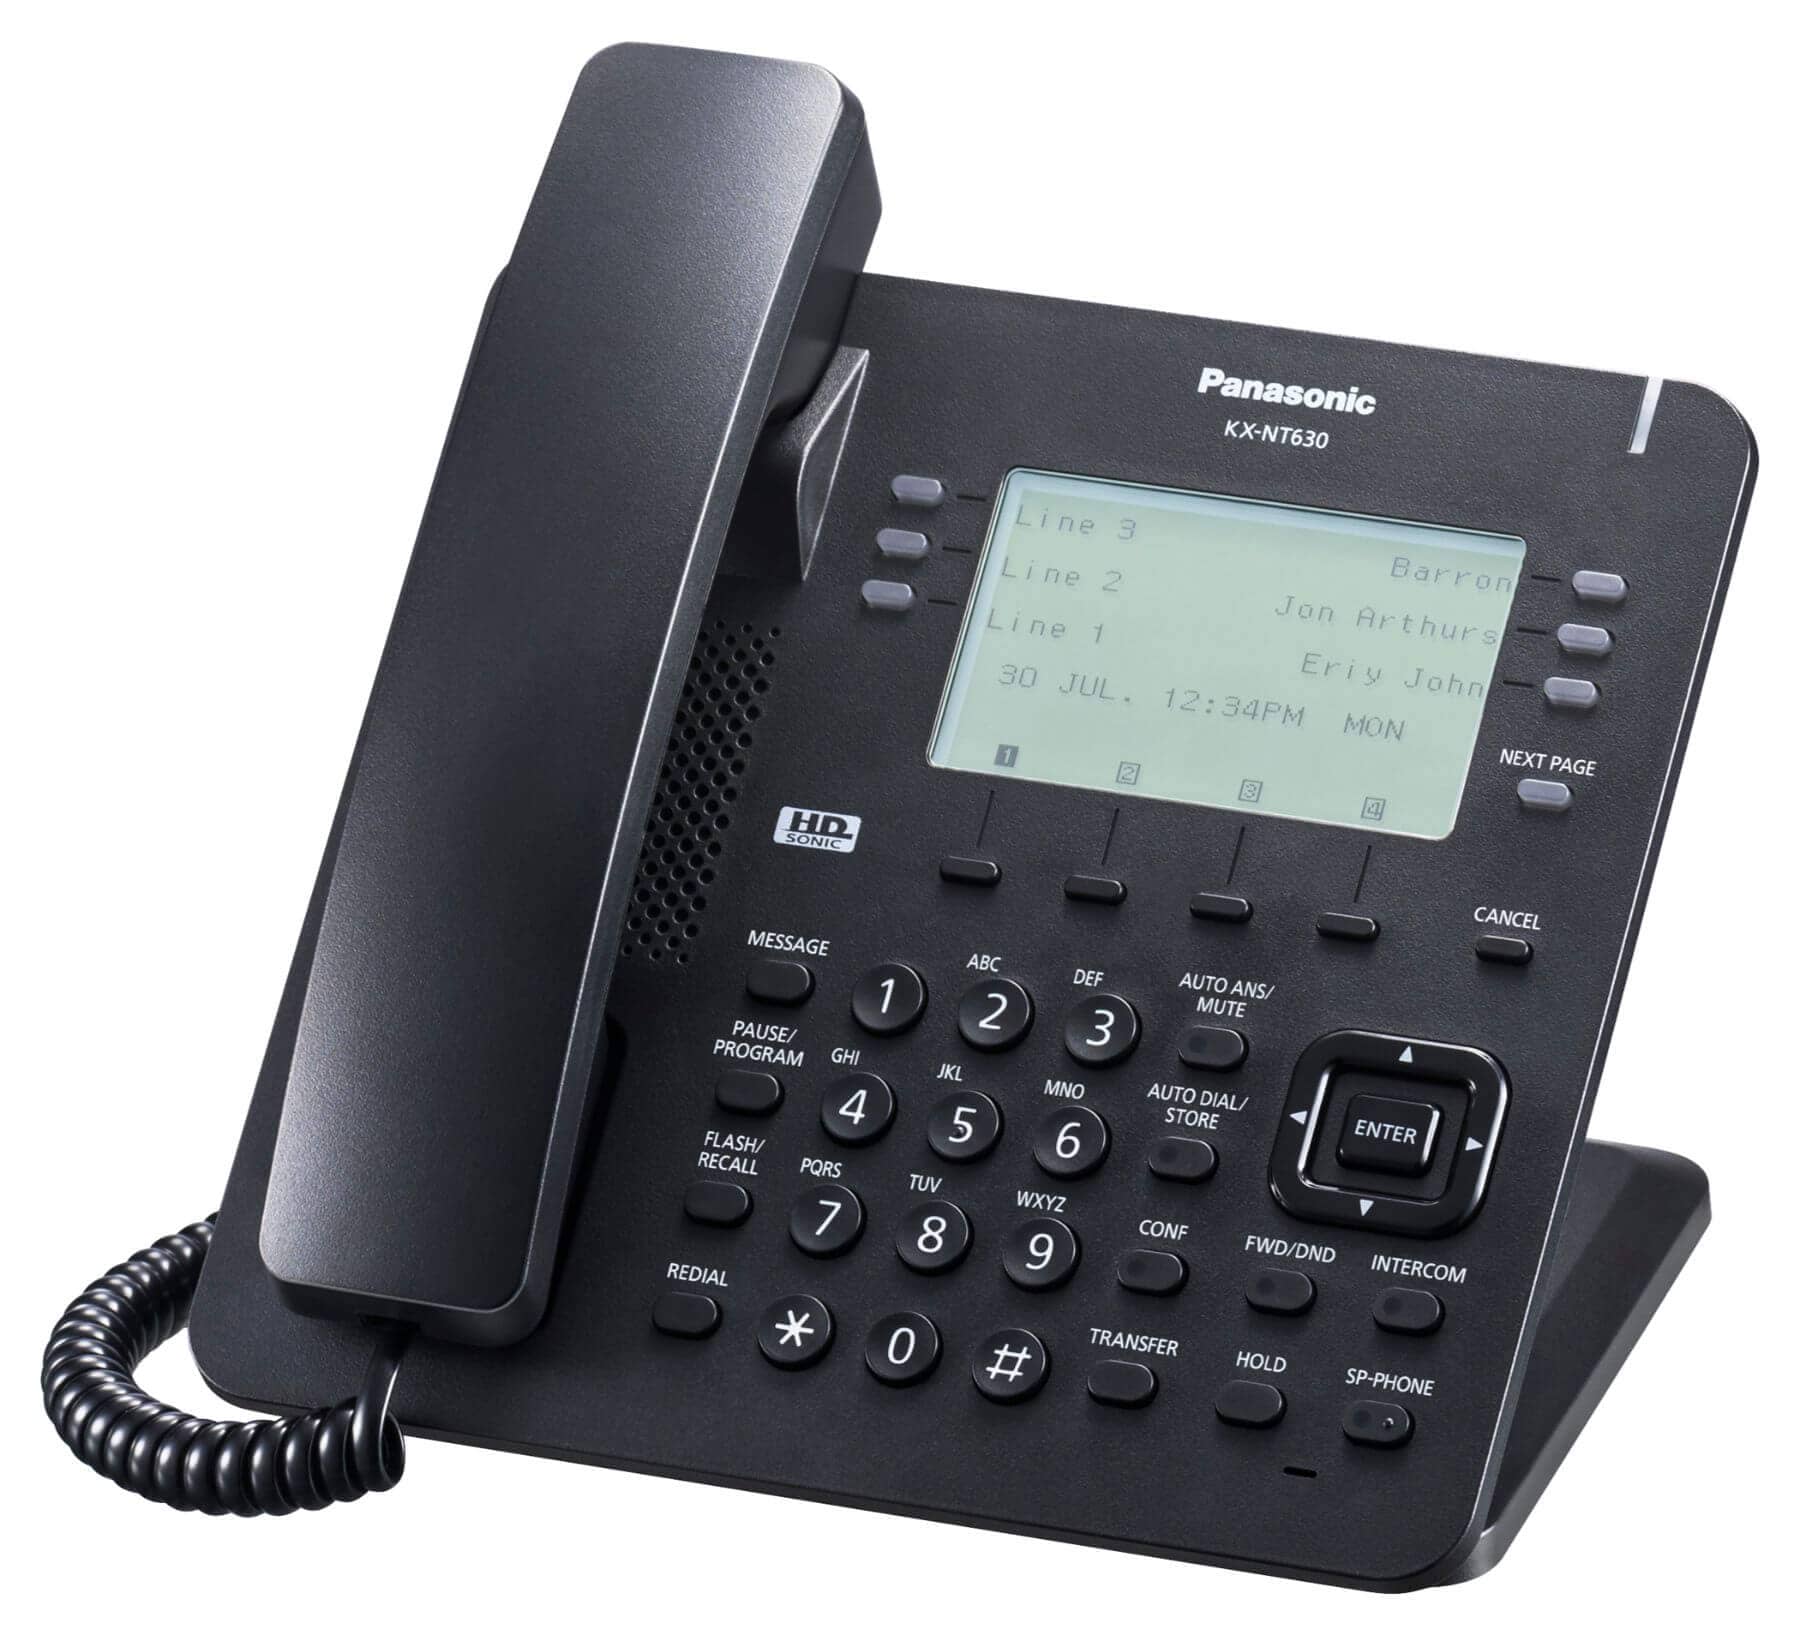 Panasonic KX-NT630 IP Phone Image